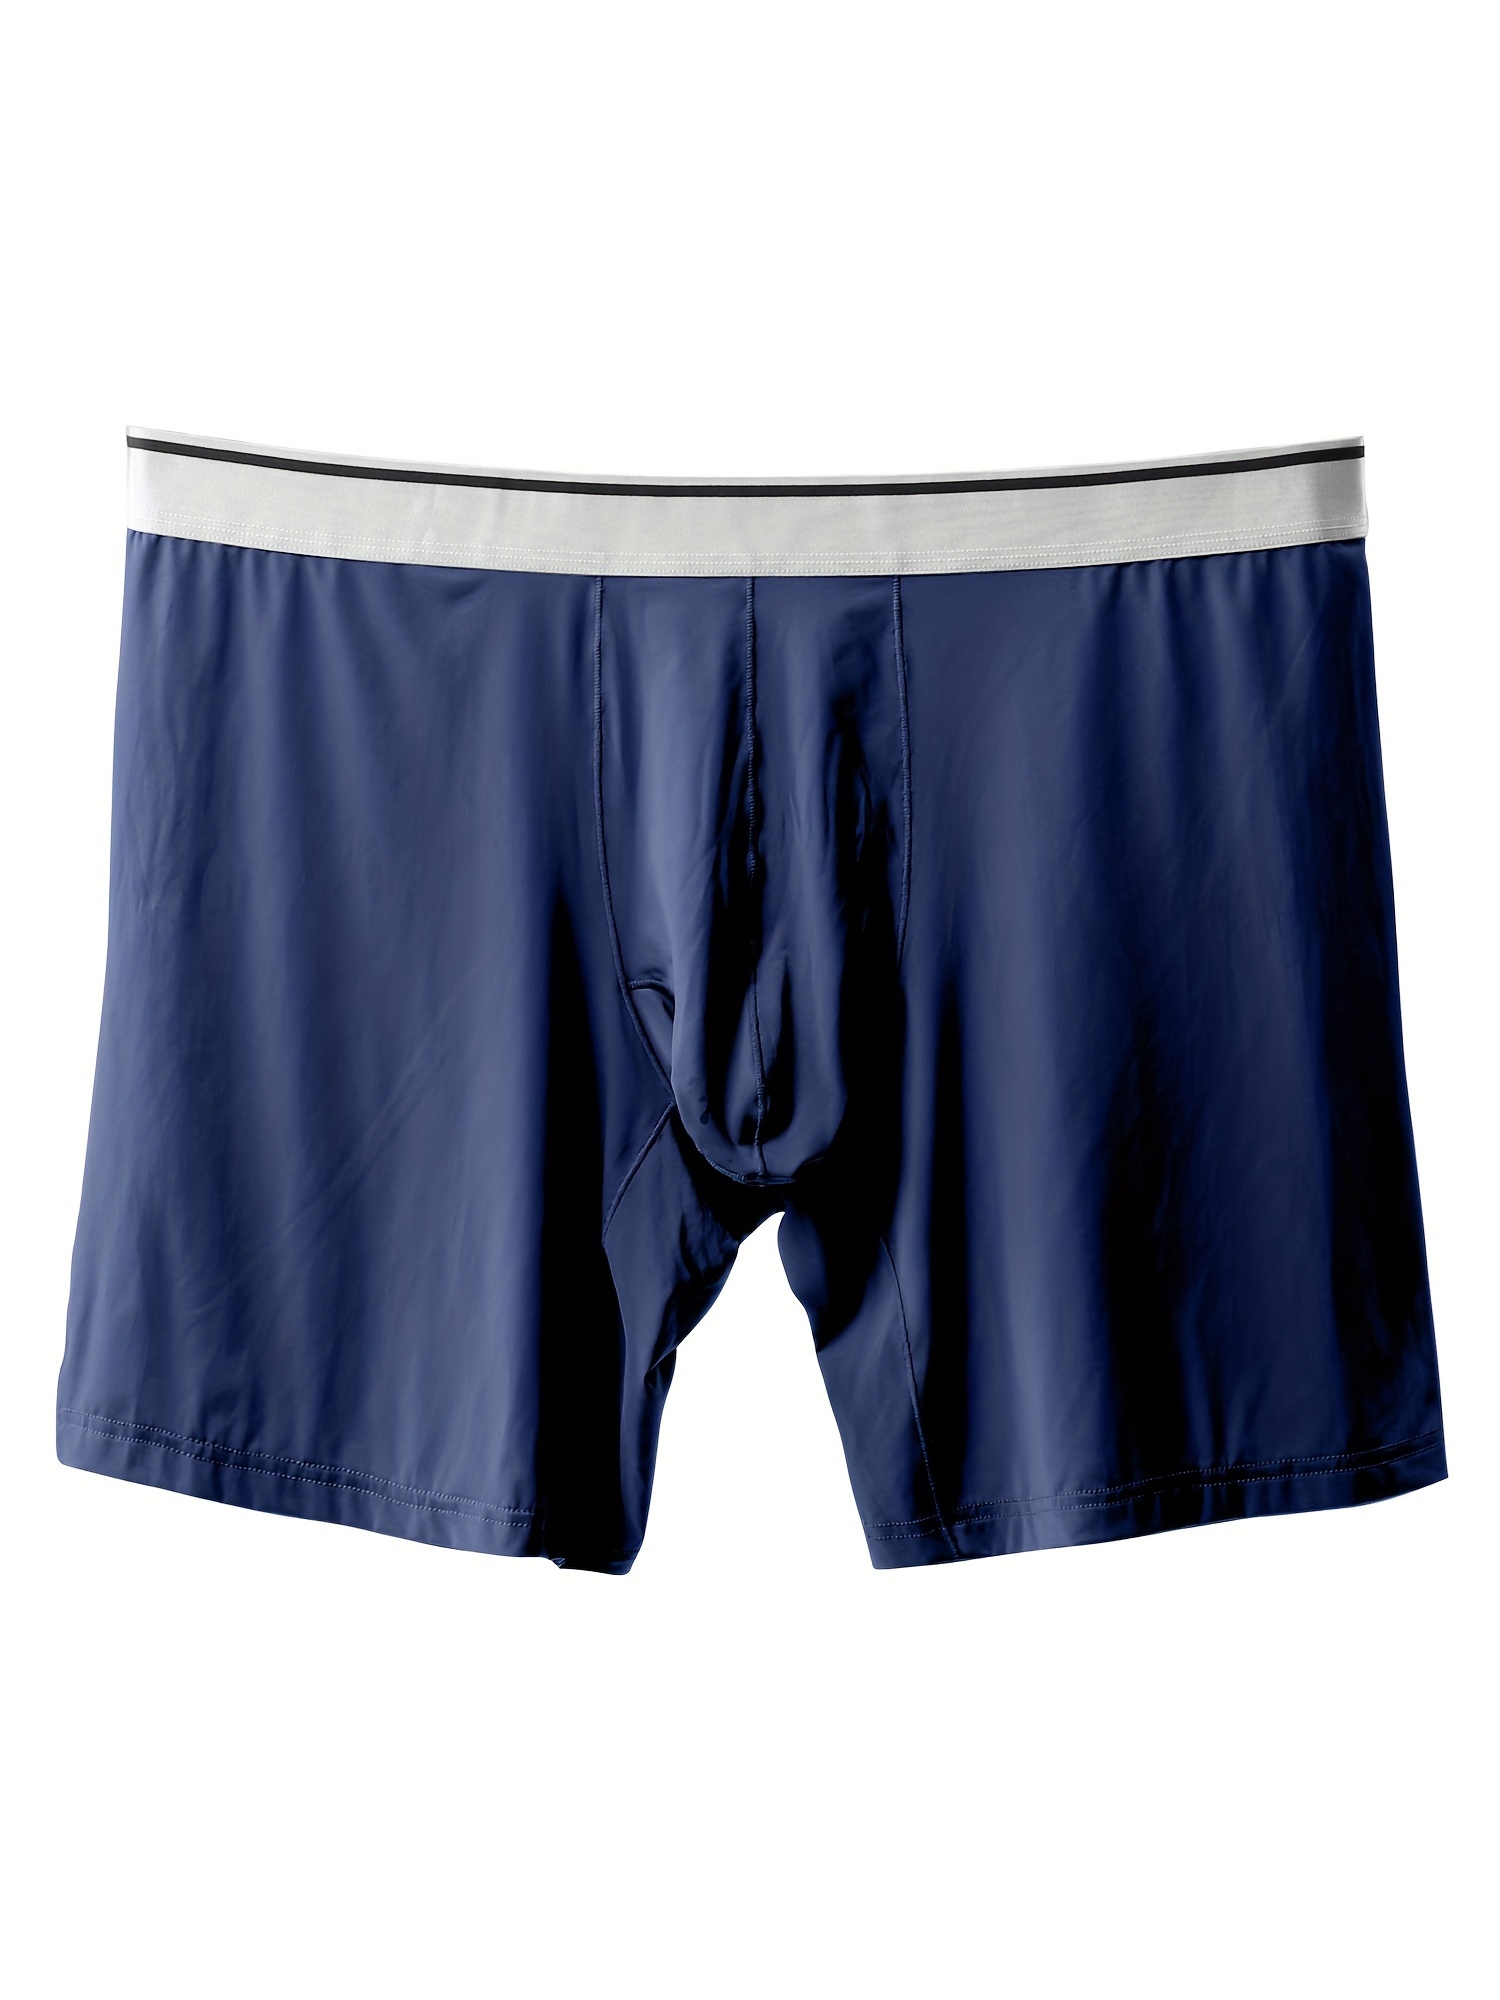 1PC Men's Fashion Underwear Boxer Shorts Sexy Elephant Trunk Underwear